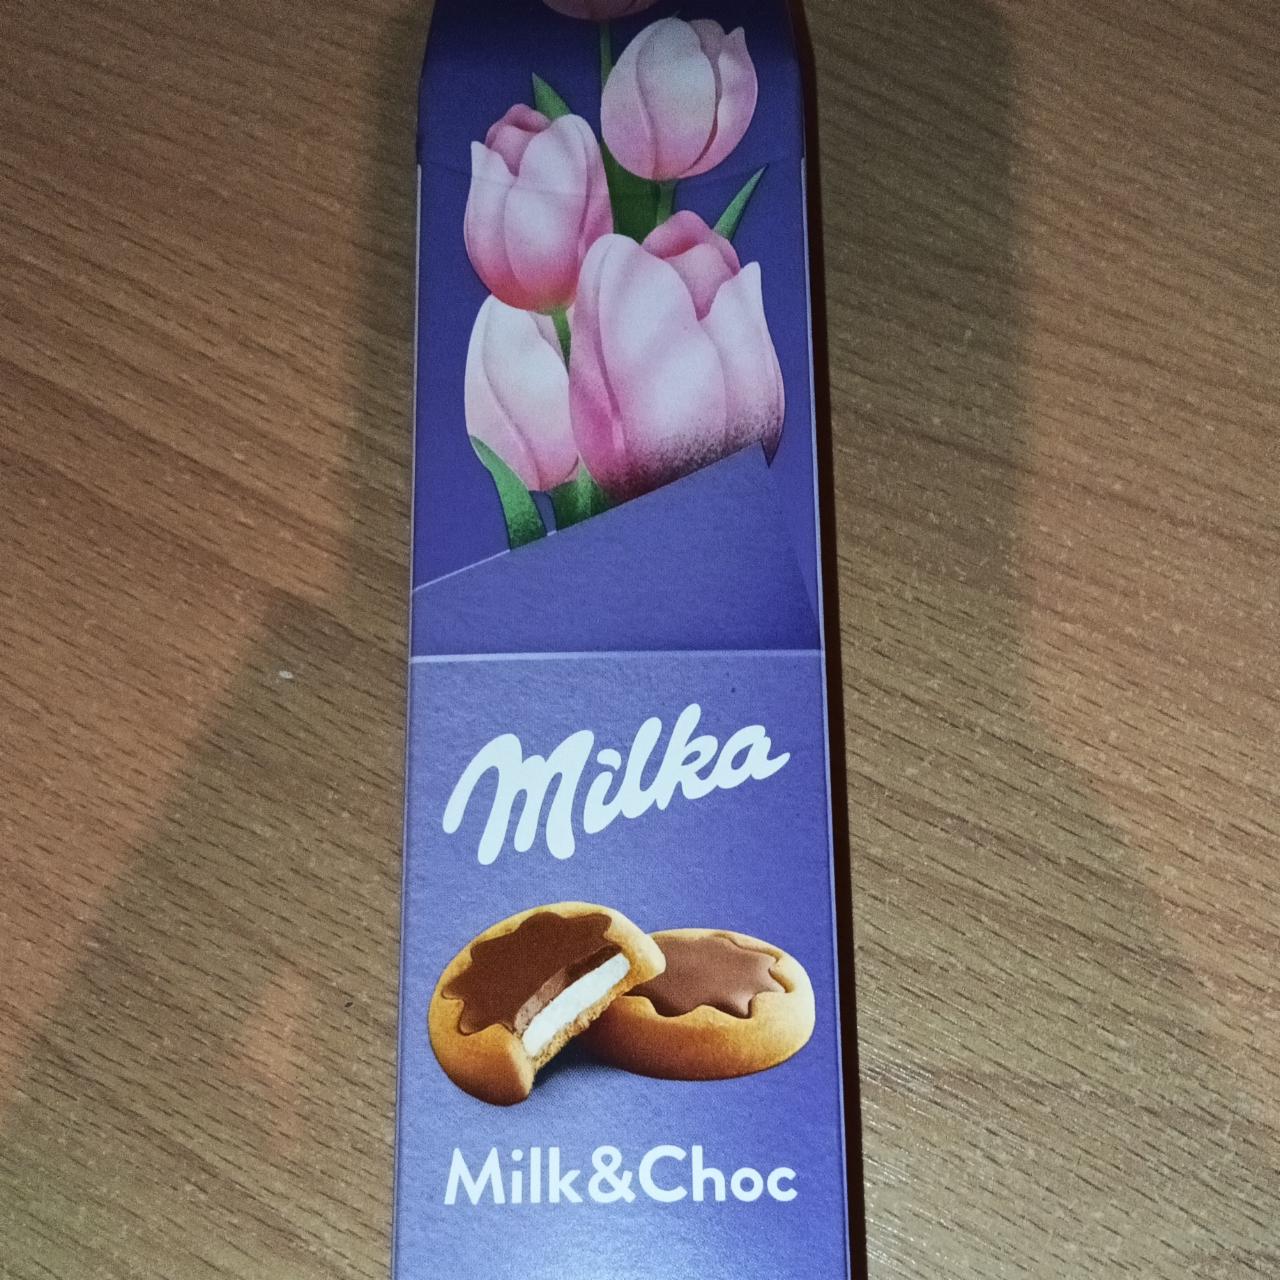 Фото - Печенье Милка с молочной начинкой, частично покрытое молочным шоколадом Milka